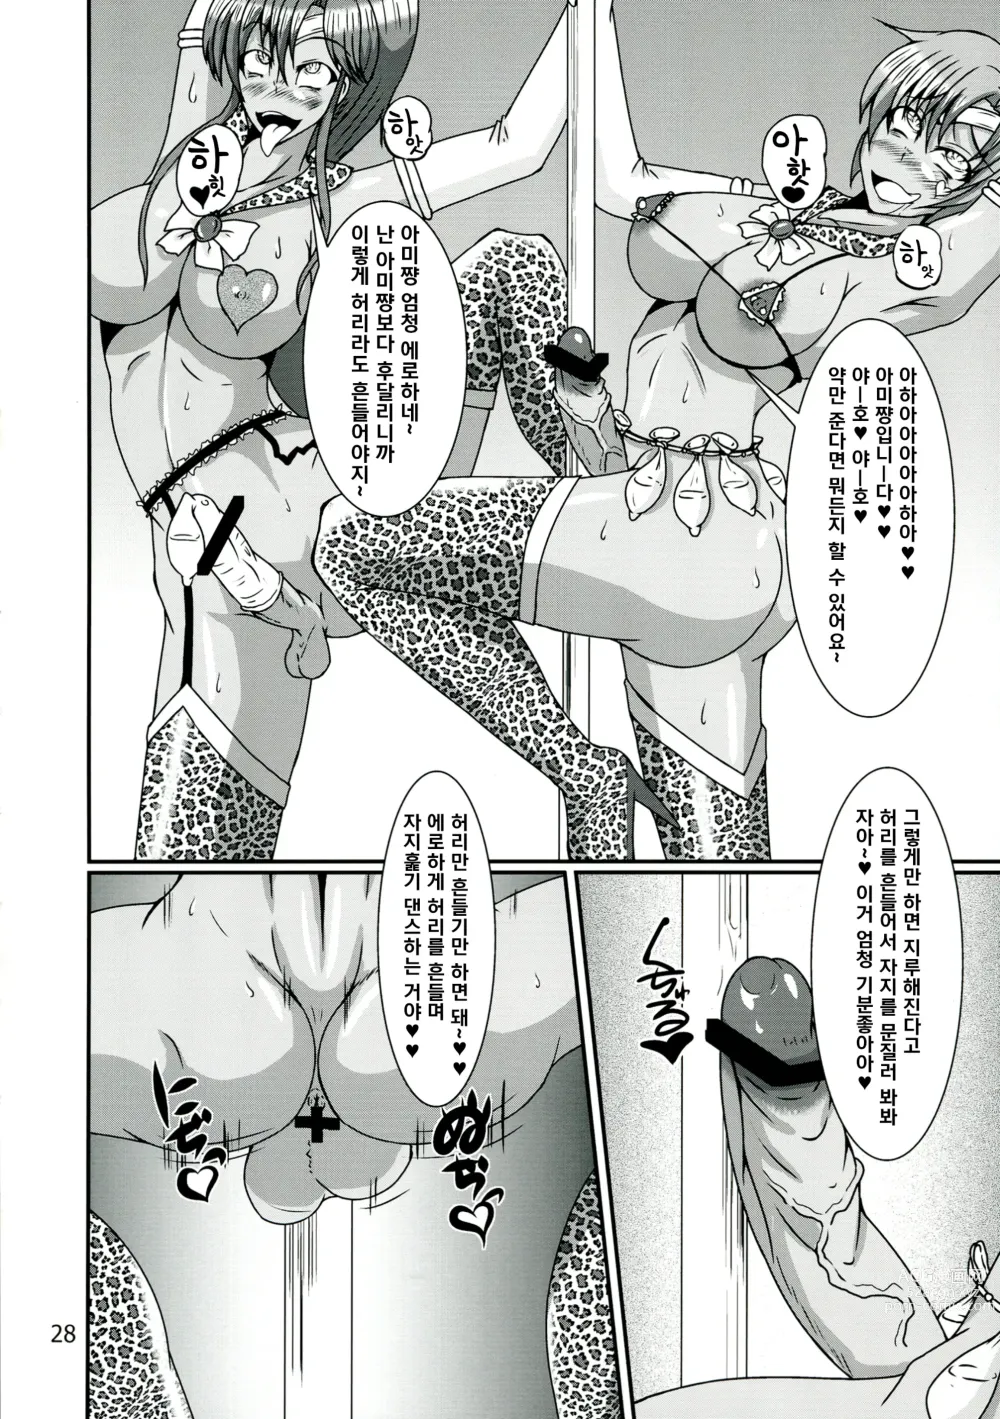 Page 28 of doujinshi Futanari Ami-chan Mako-chan ga Kimeseku ni Hamacchau Hon